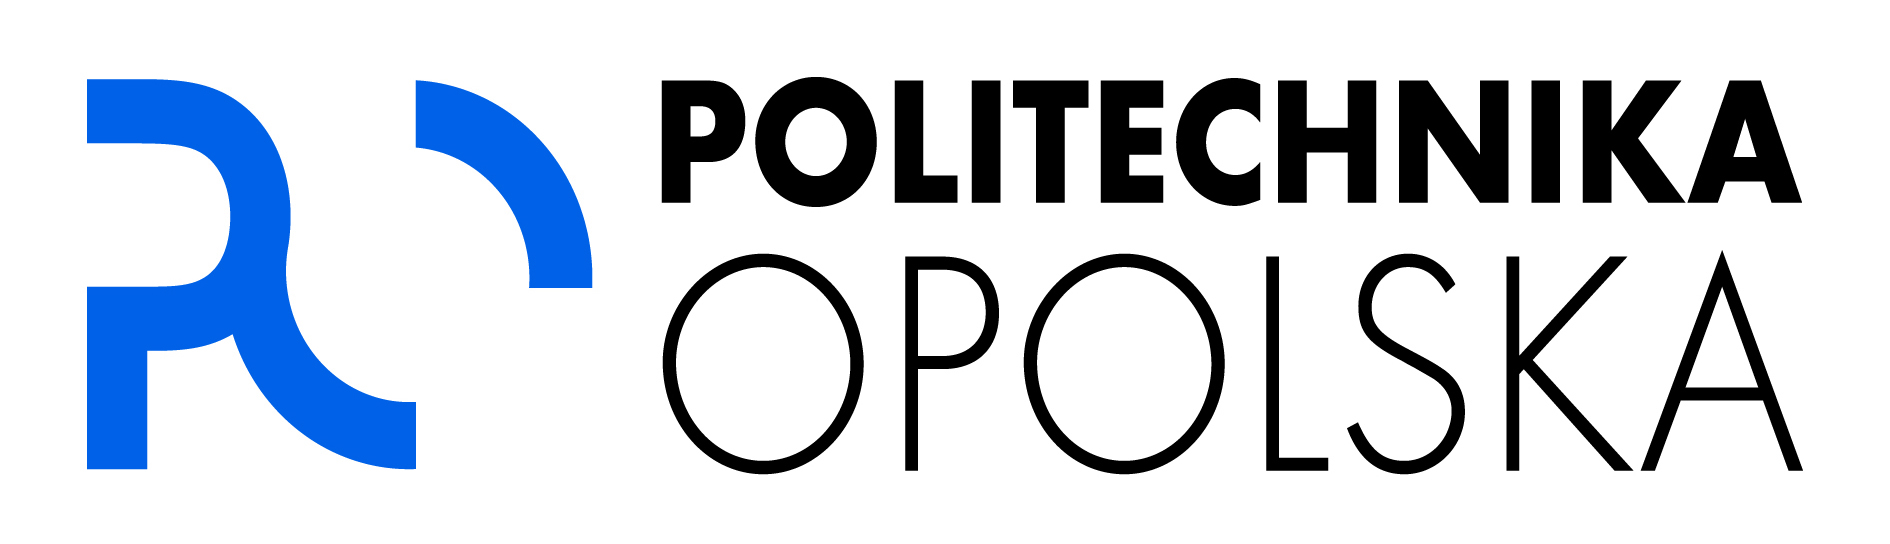 logotyp politechnika opolska 03